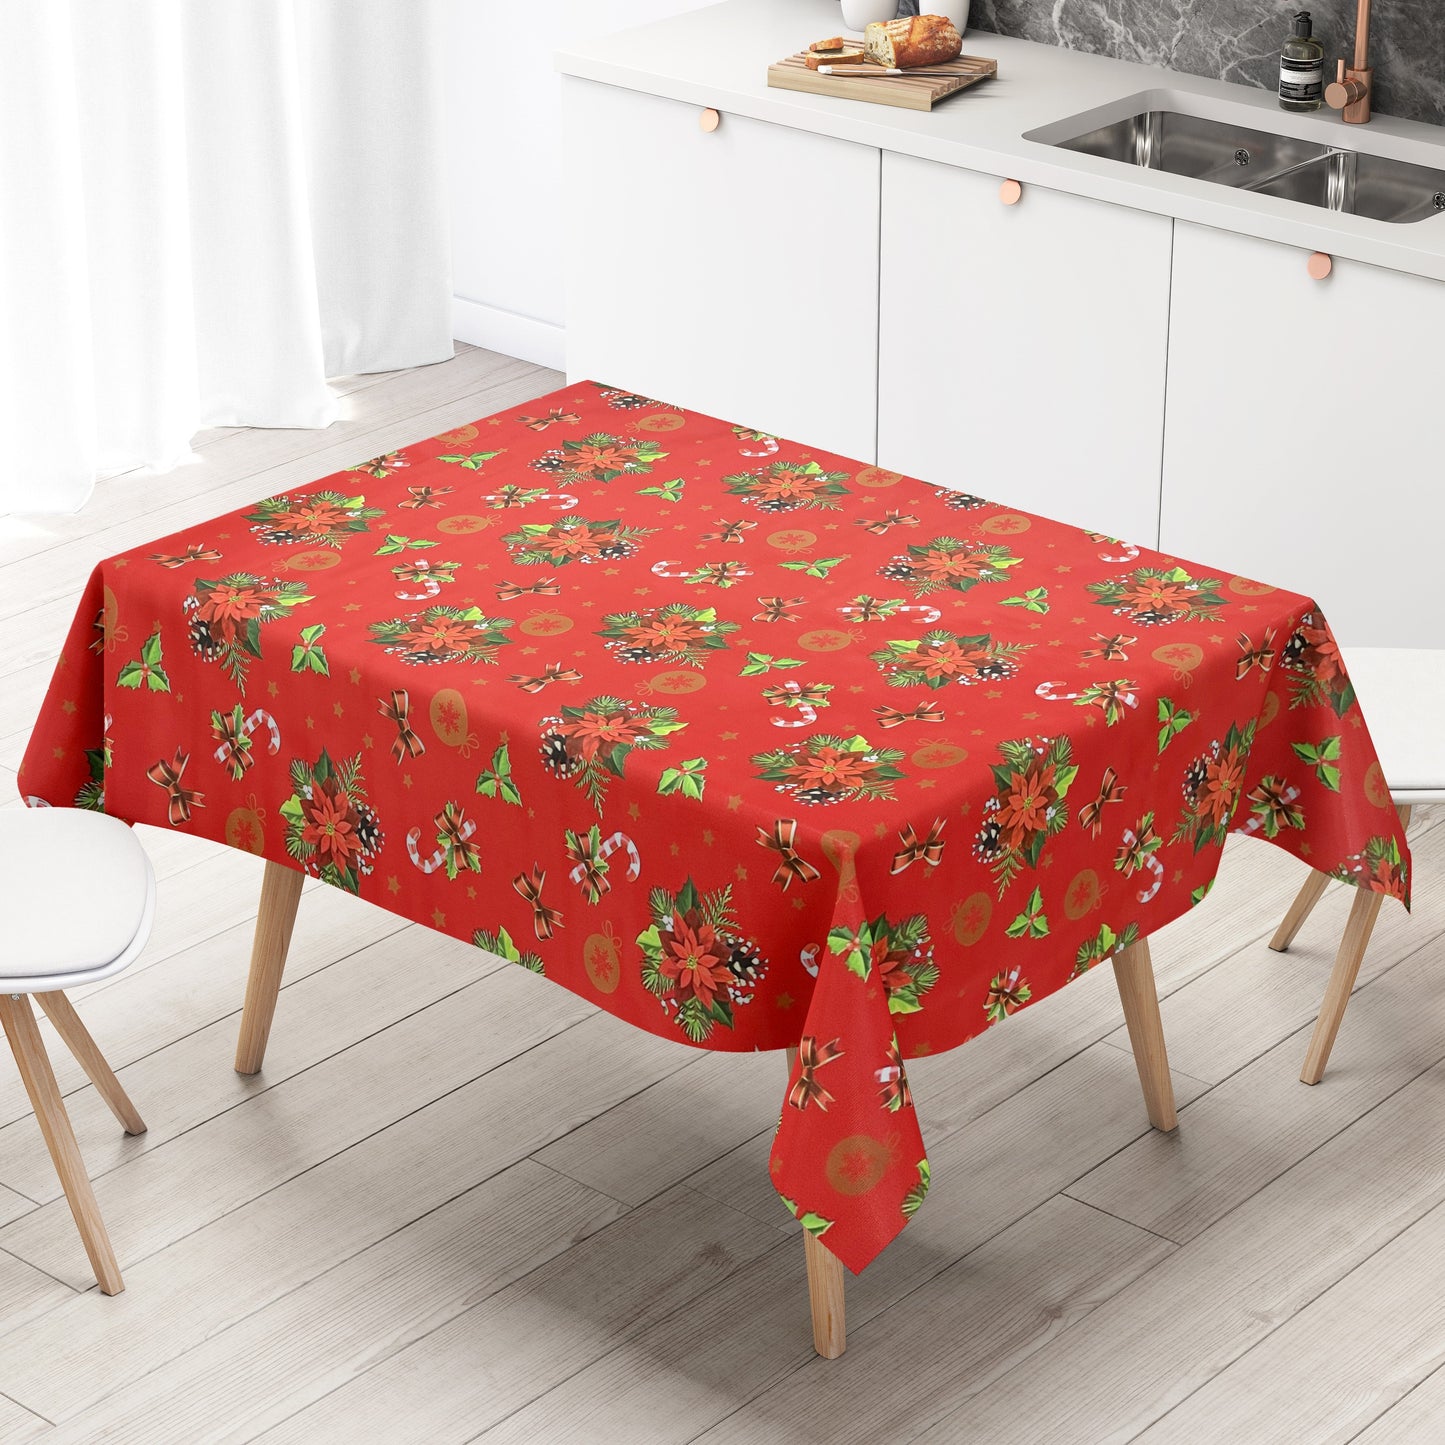 KEVKUS Wachstuch Tischdecke B6023-03 rot Weihnachten Weihnachtsstern wählbar in eckig, rund und oval -